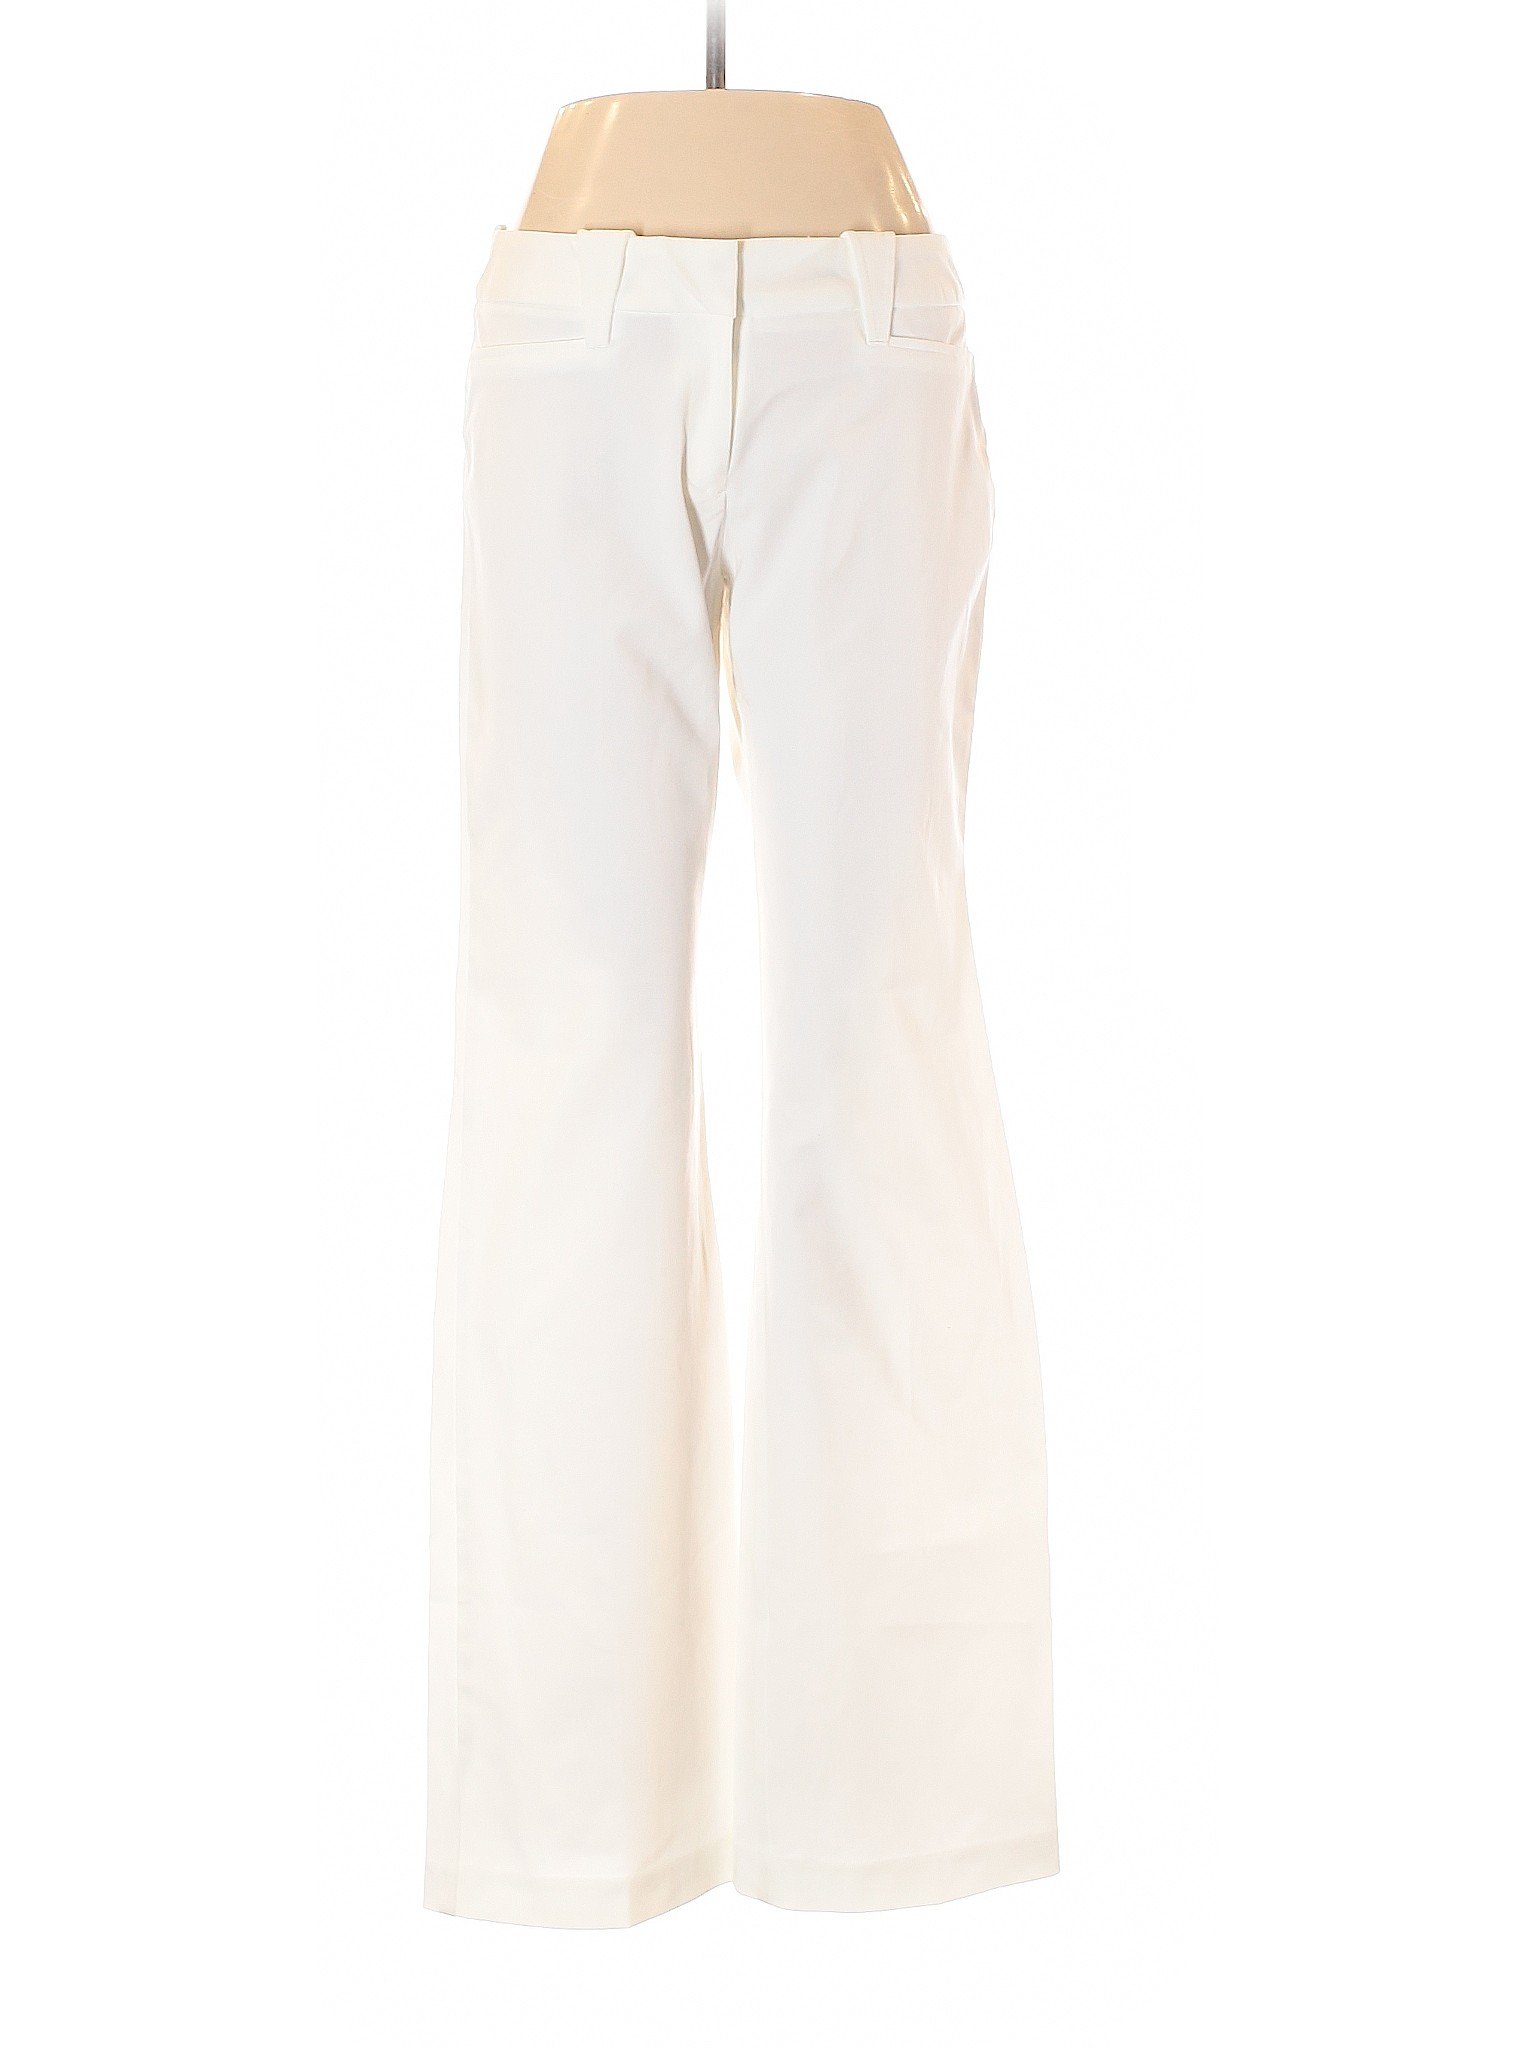 Express Women White Dress Pants 5 | eBay